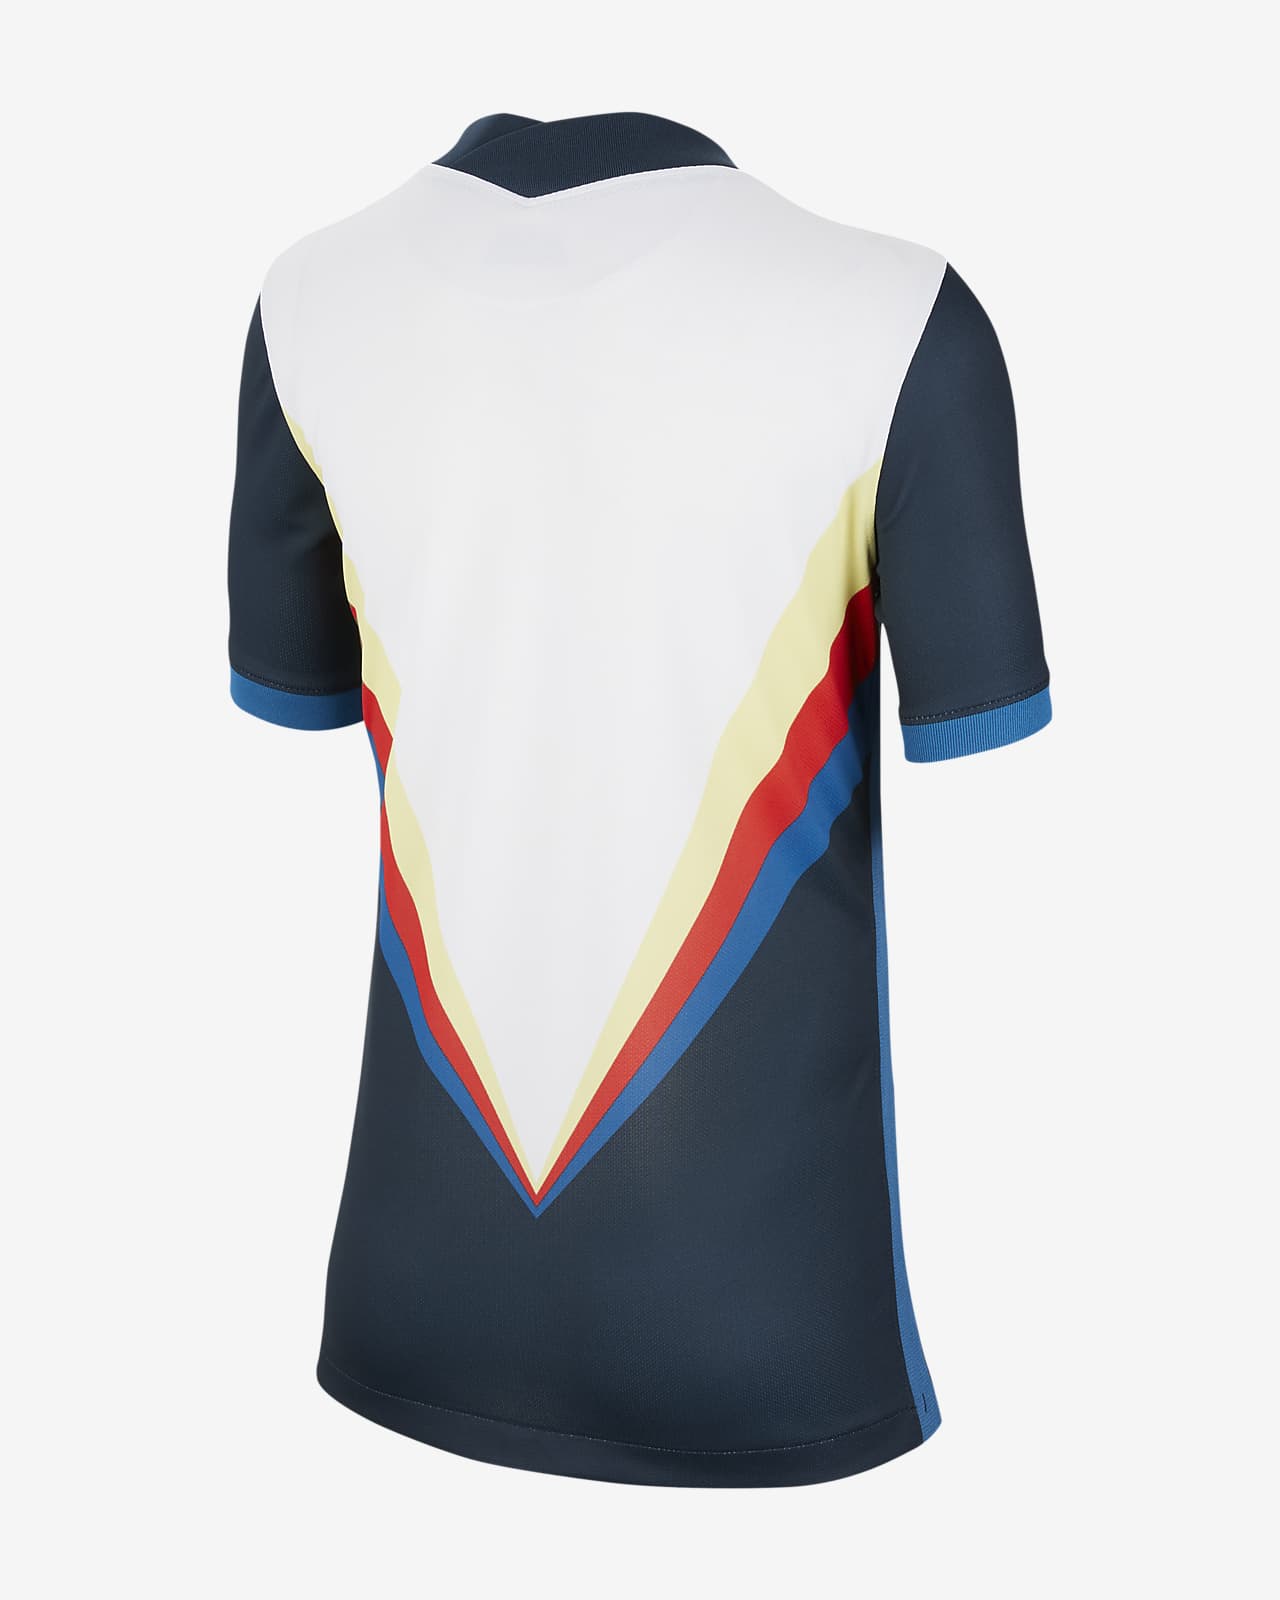 Camiseta de fútbol para niños talla grande del Club América 2020/21 Stadium  de visitante. Nike.com